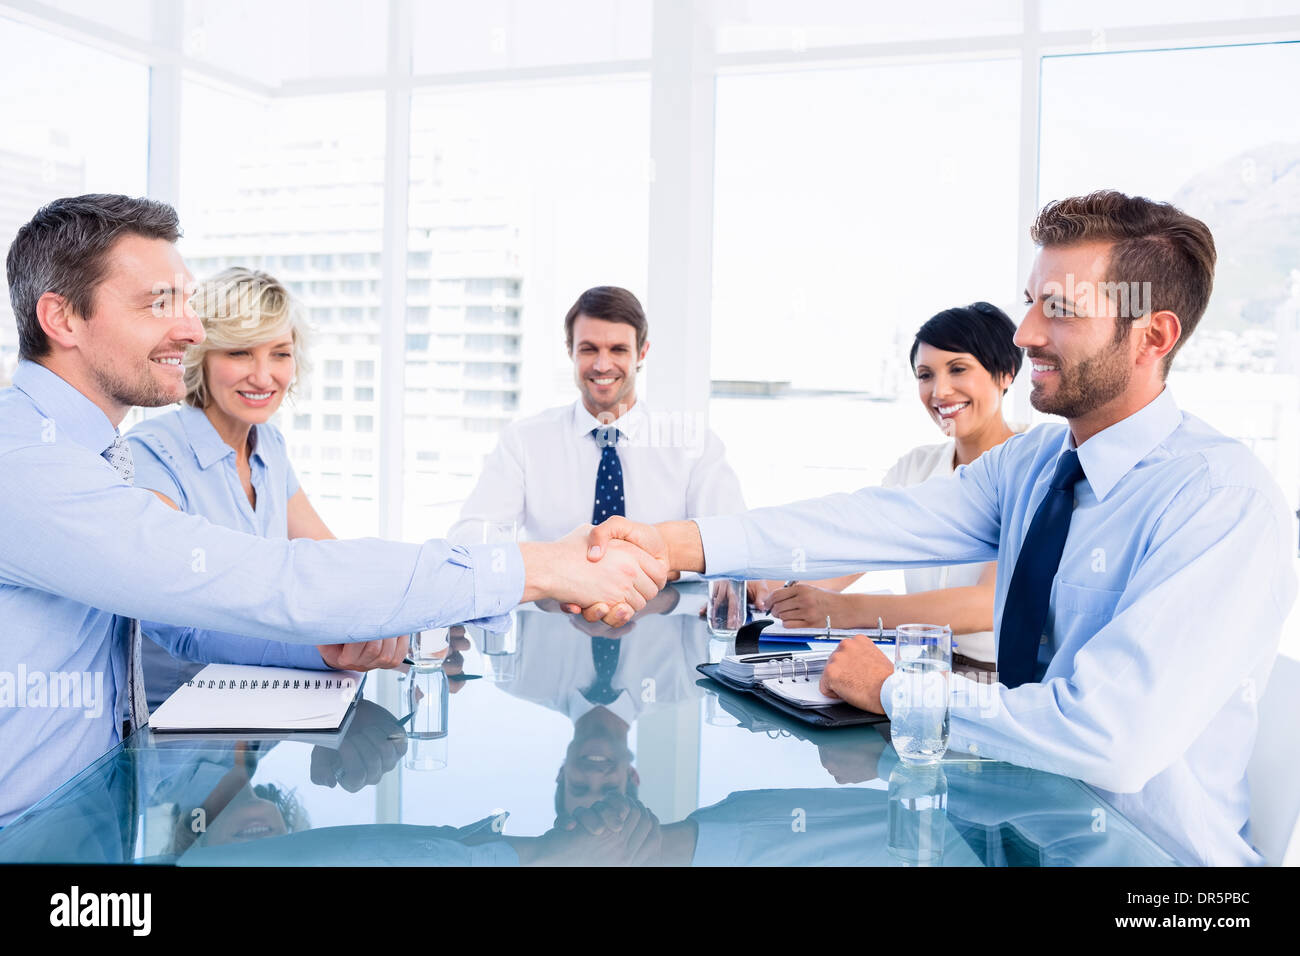 Los ejecutivos se estrechan las manos durante la reunión de negocios Foto de stock